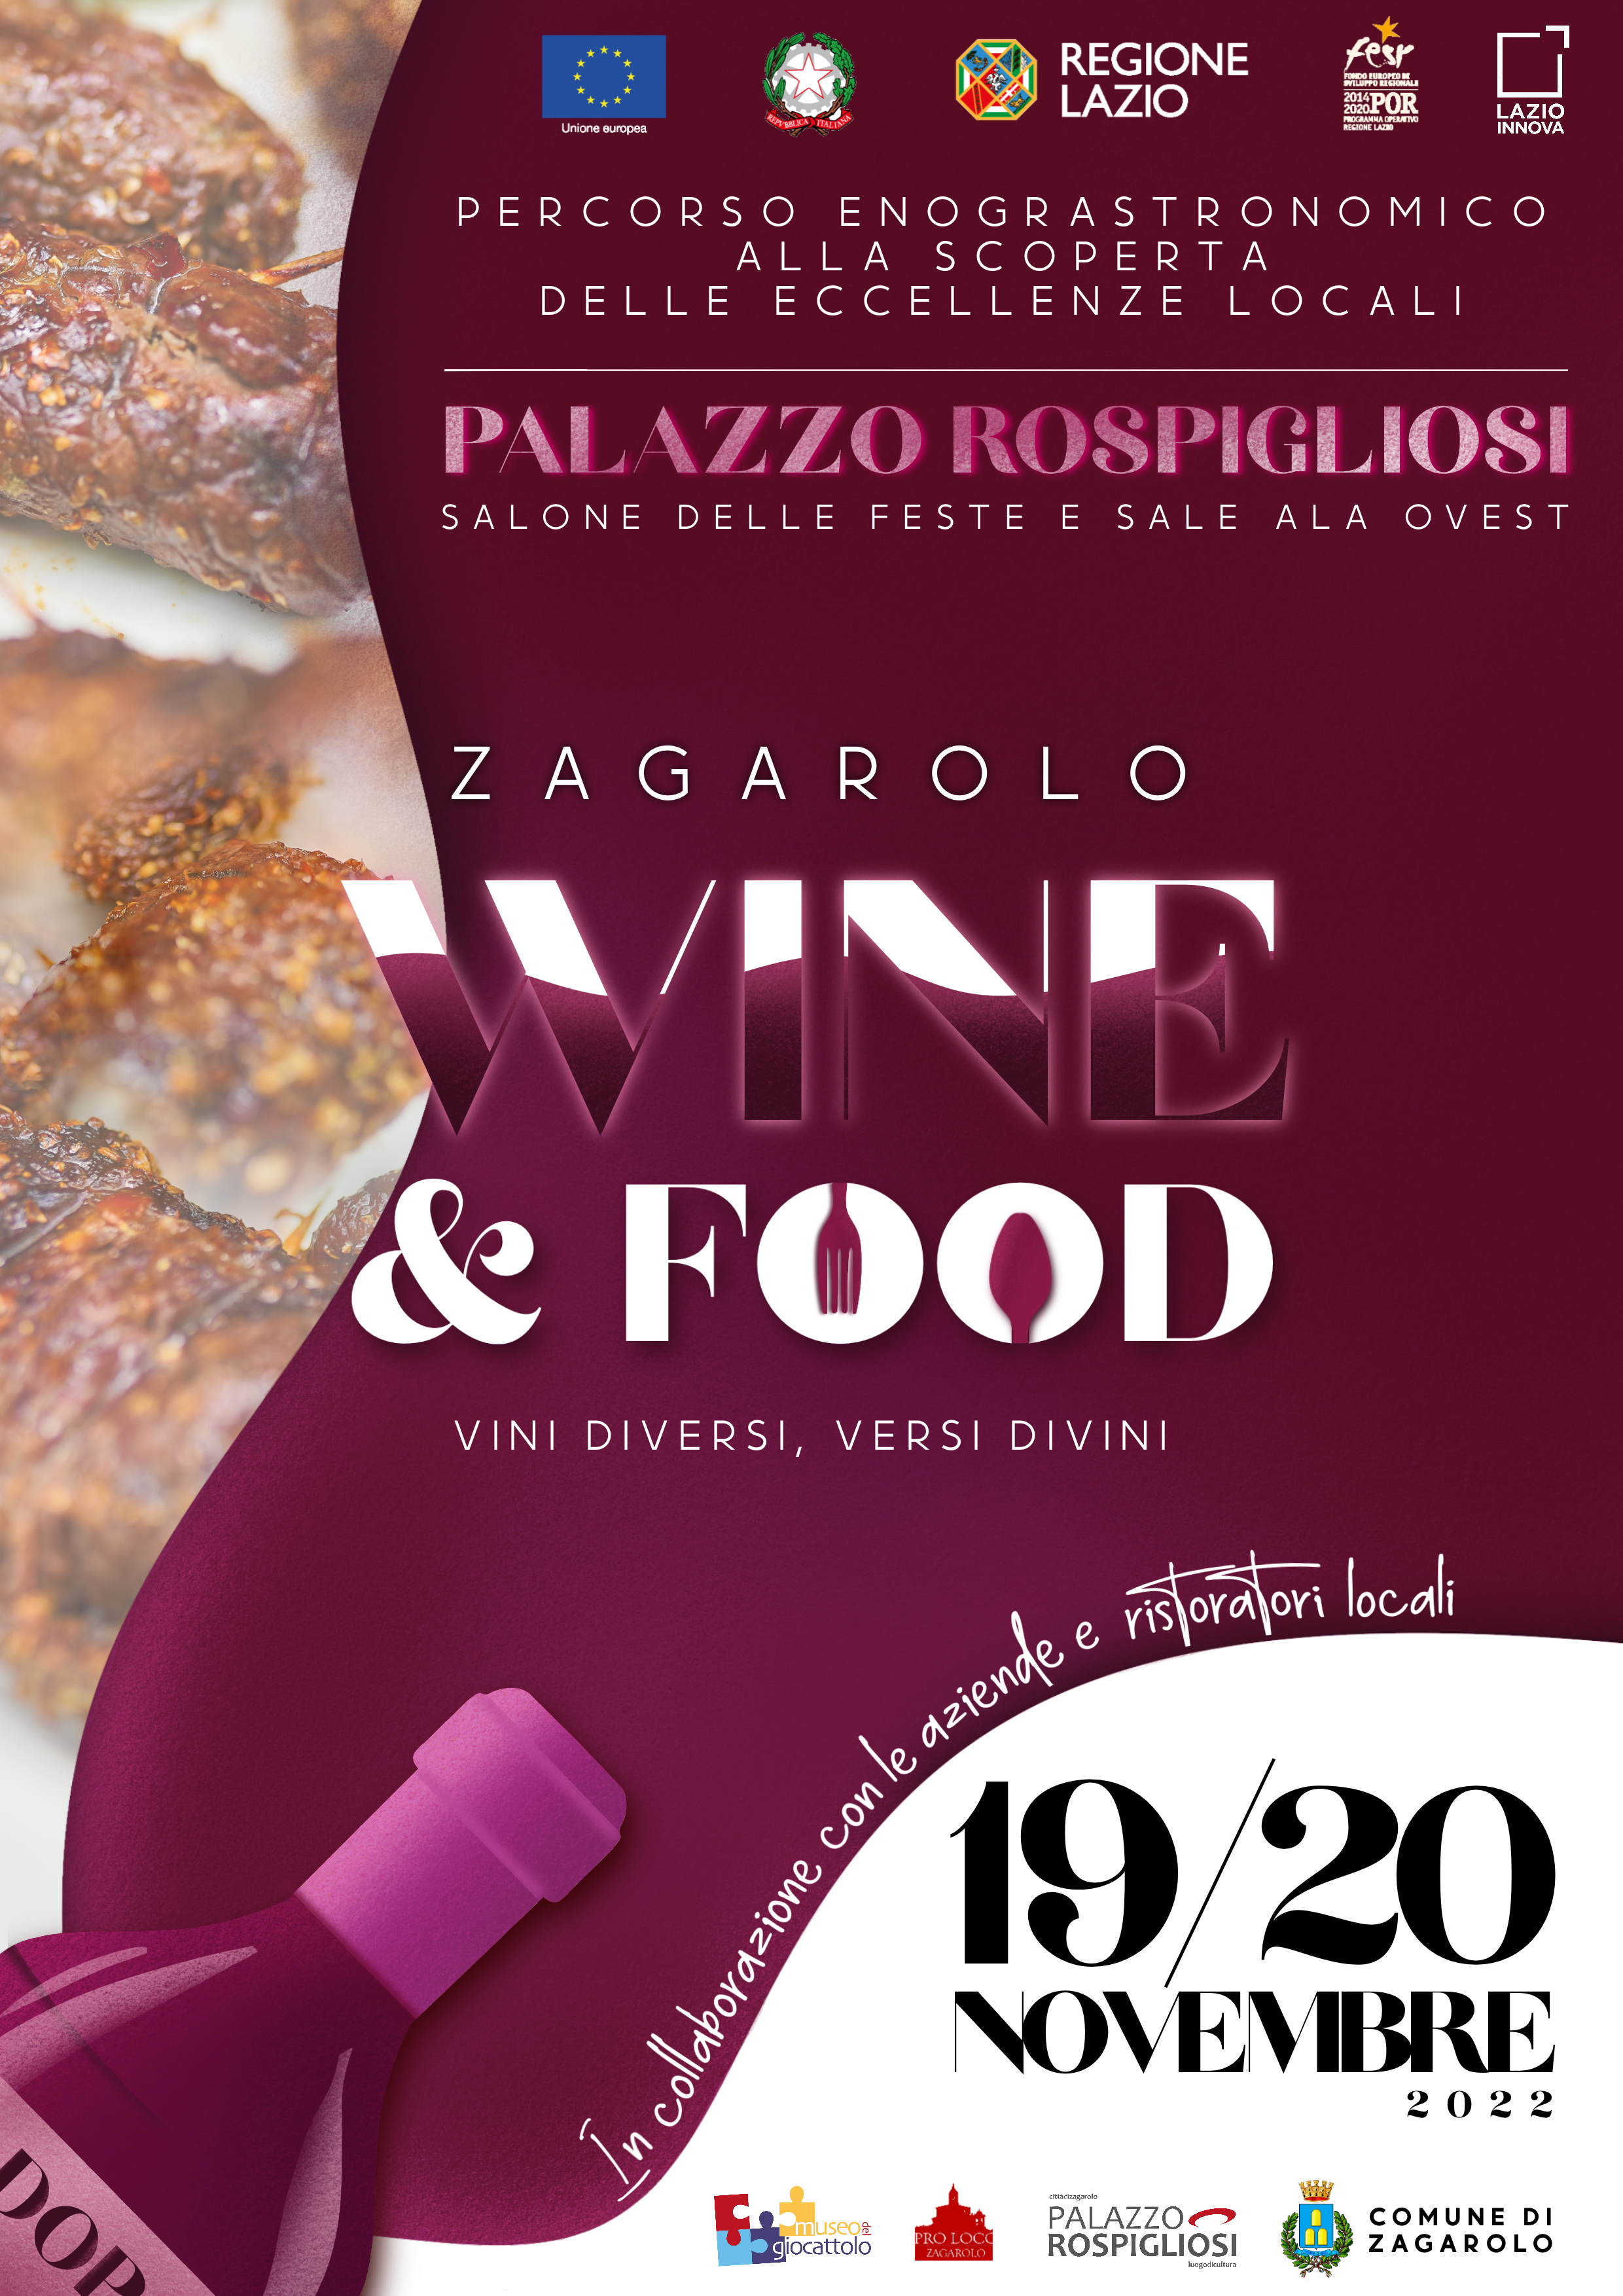 ZAGAROLO WINE E FOOD - 19 E 20 NOVEMBRE 2022, PALAZZO ROSPIGLIOSI